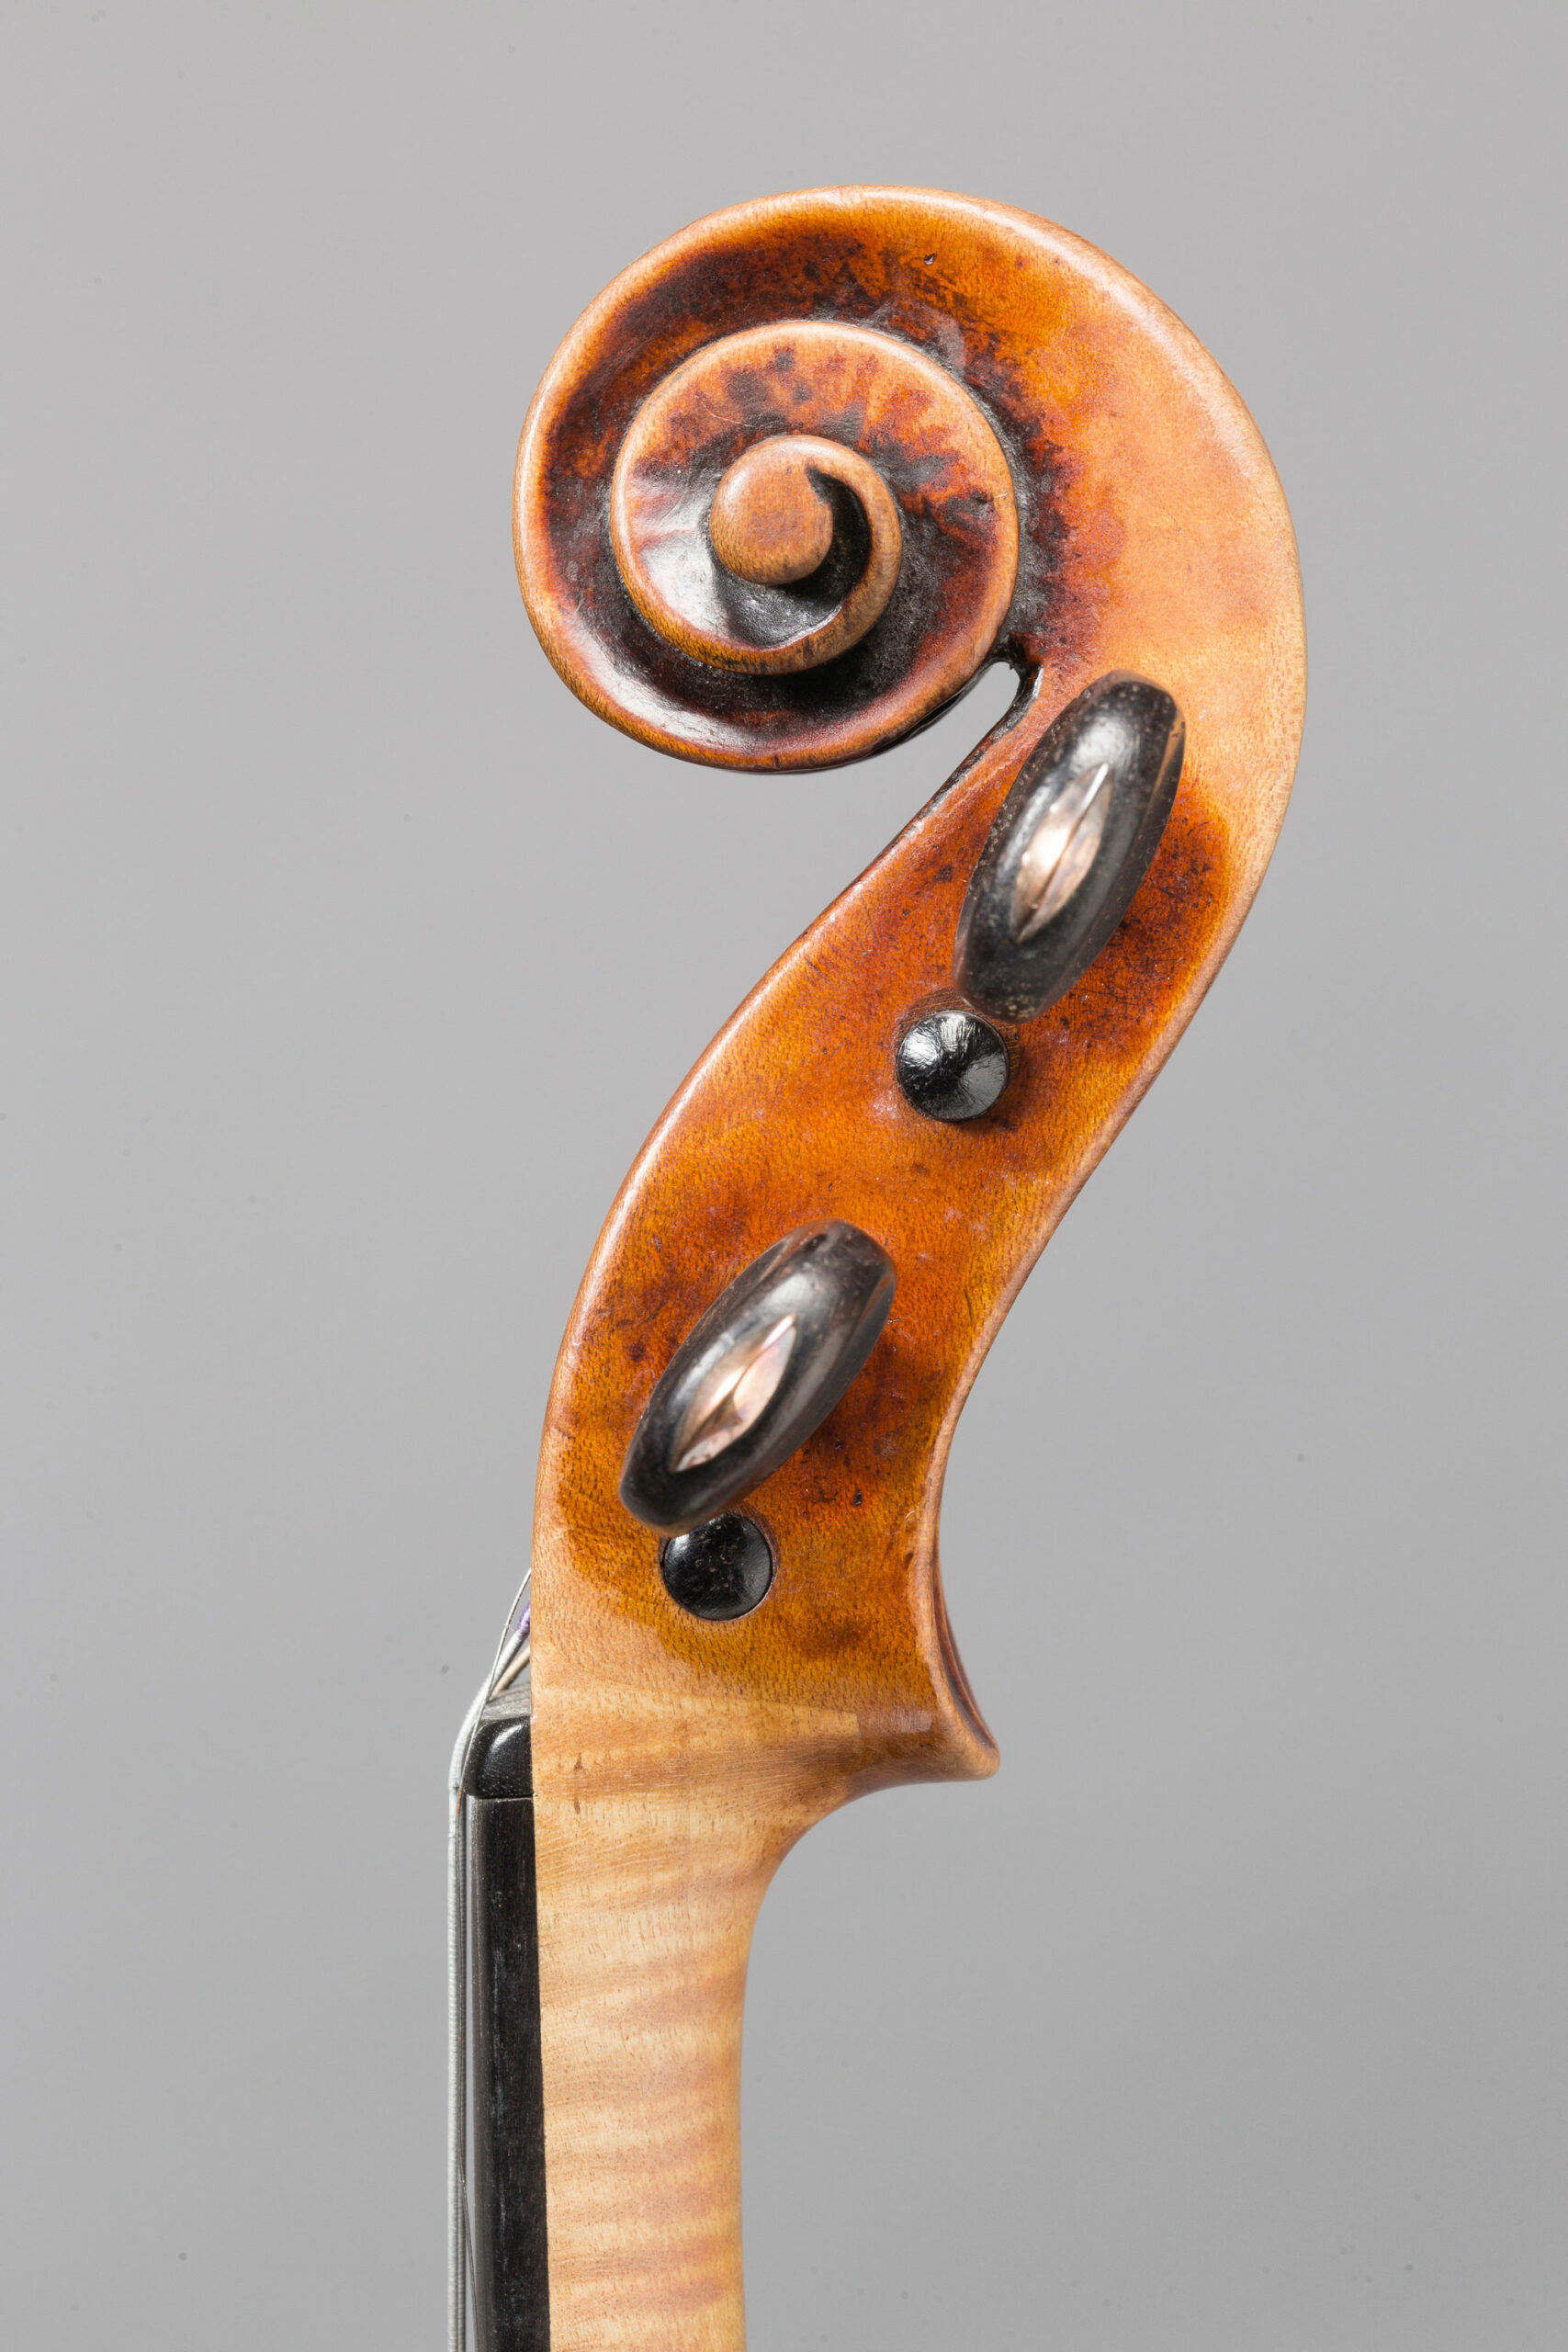 Exceptionnel violon de Jean-Baptiste VUILLAUME Collection Bernard Millant Instrument mis en vente par Vichy Enchères le 29 novembre 2017 © Christophe Darbelet